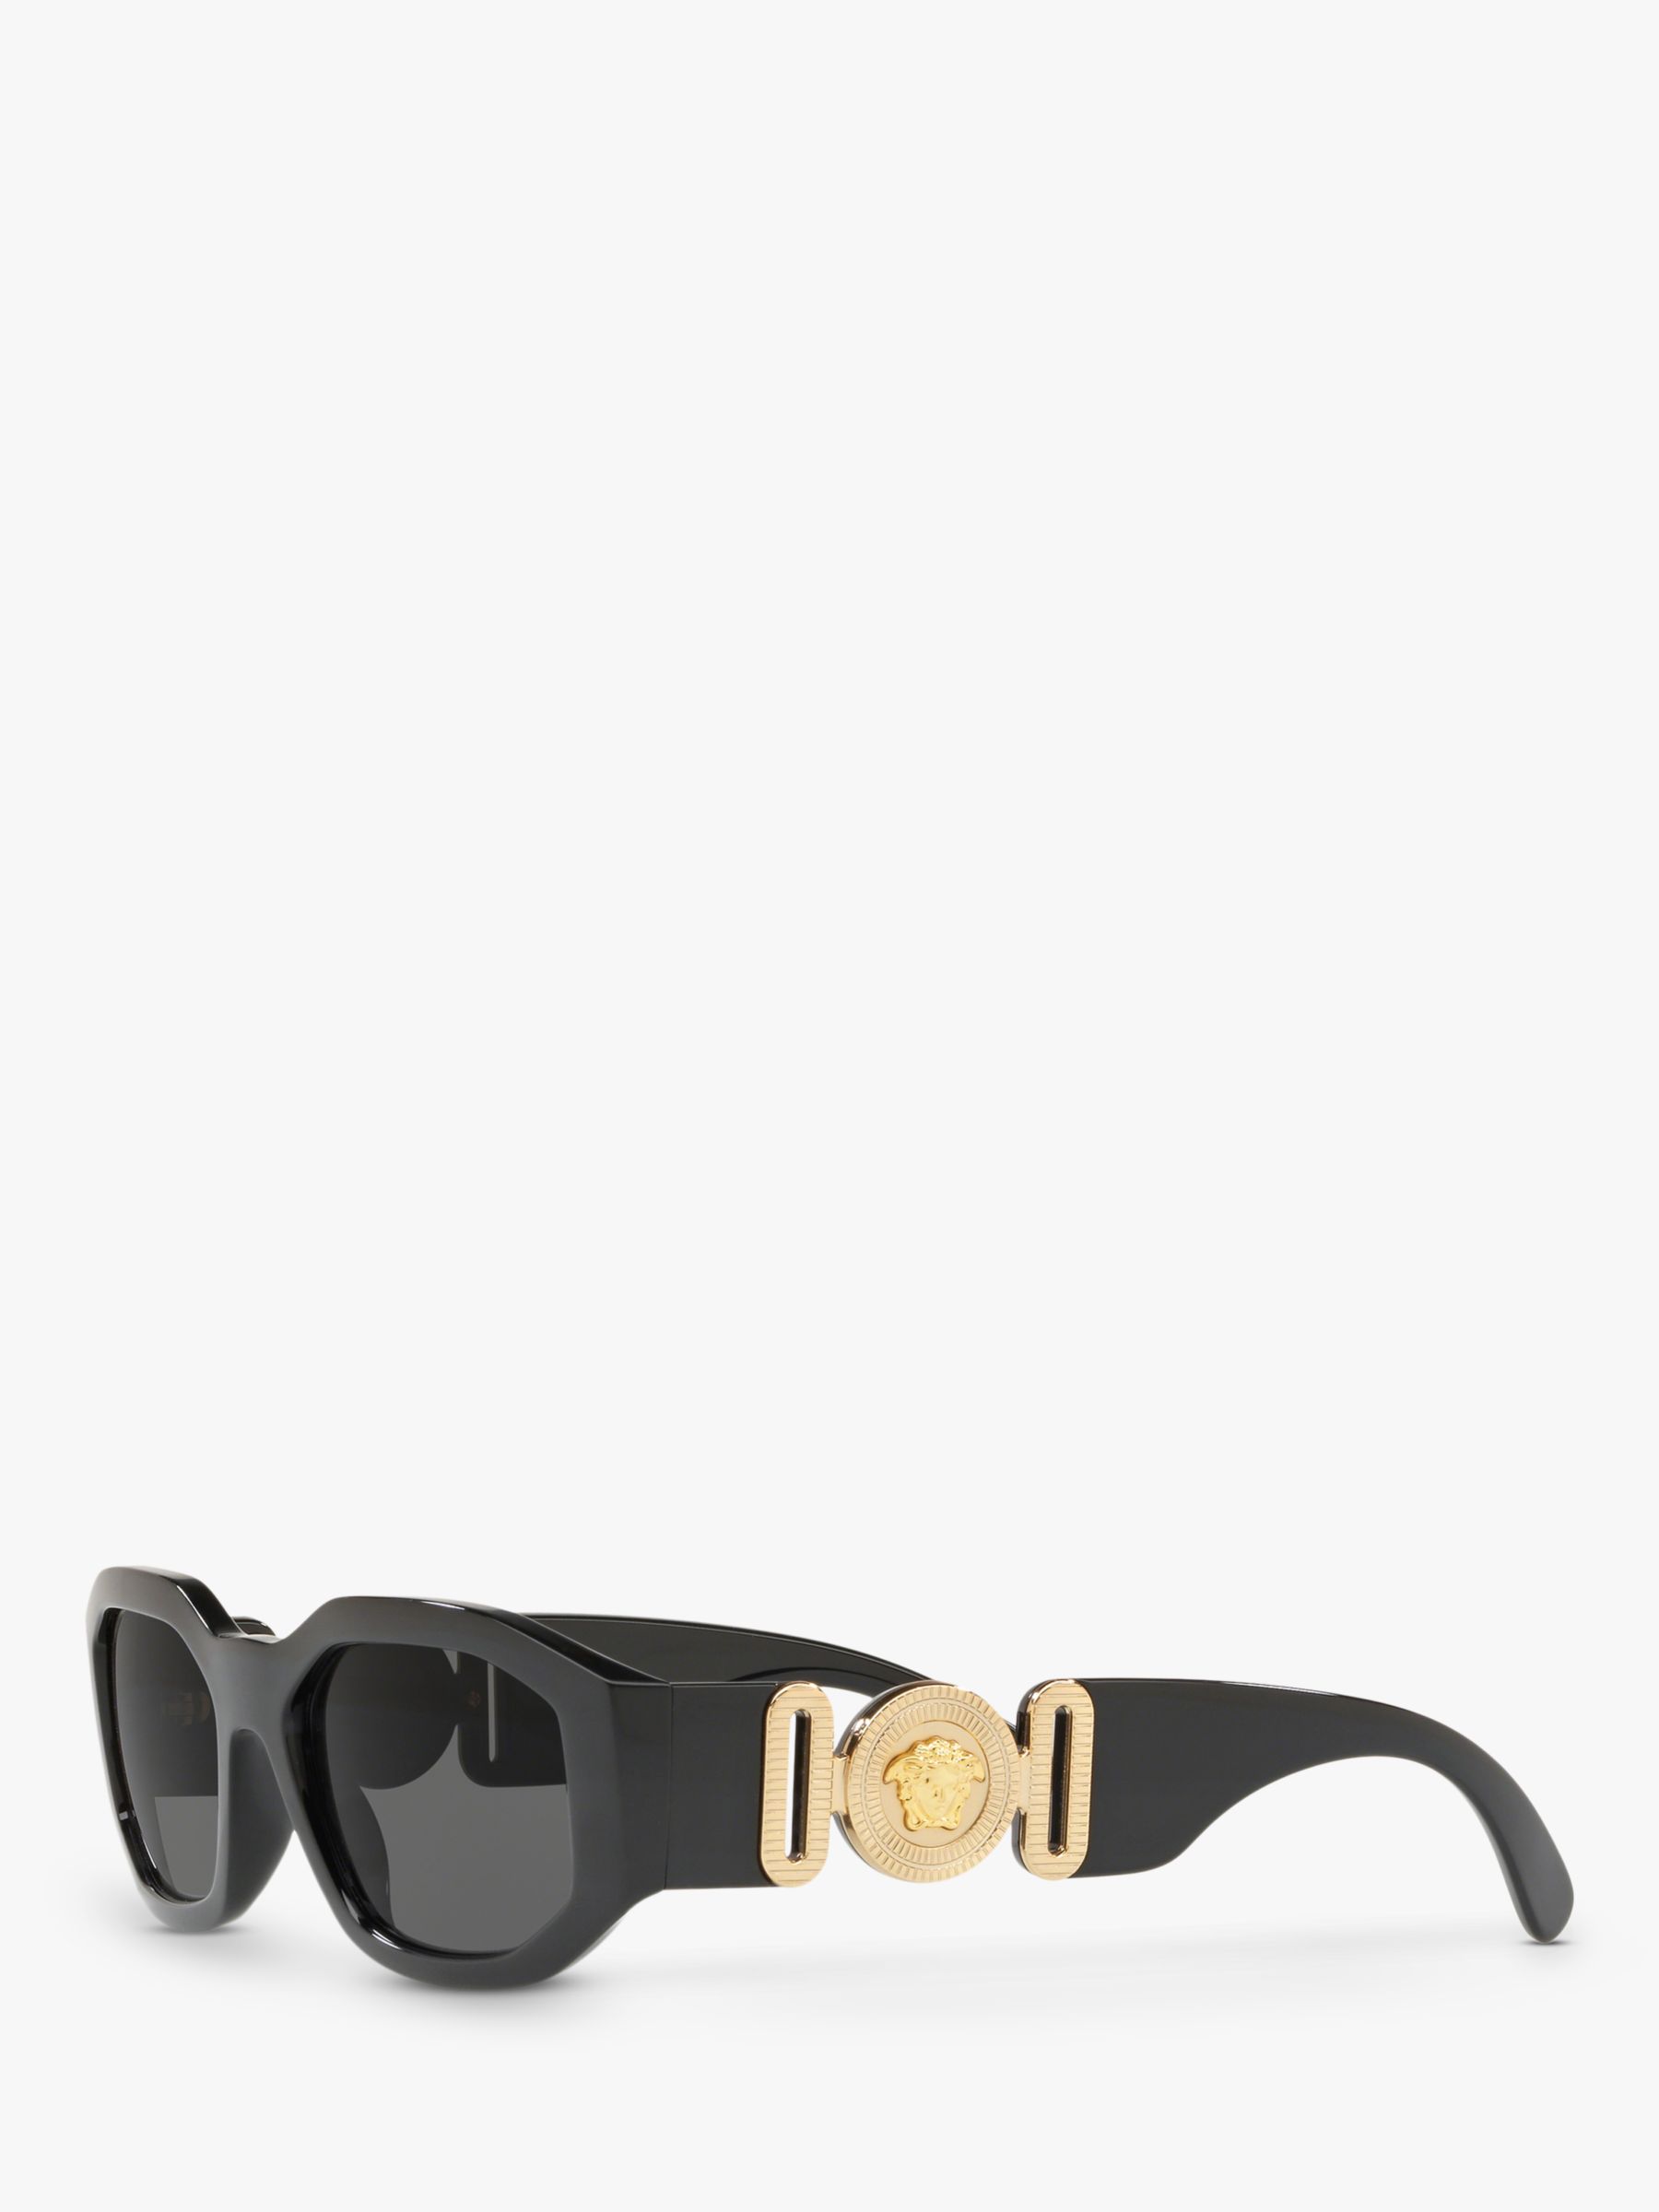 Versace VE4361 Женские квадратные солнцезащитные очки, черные/серые